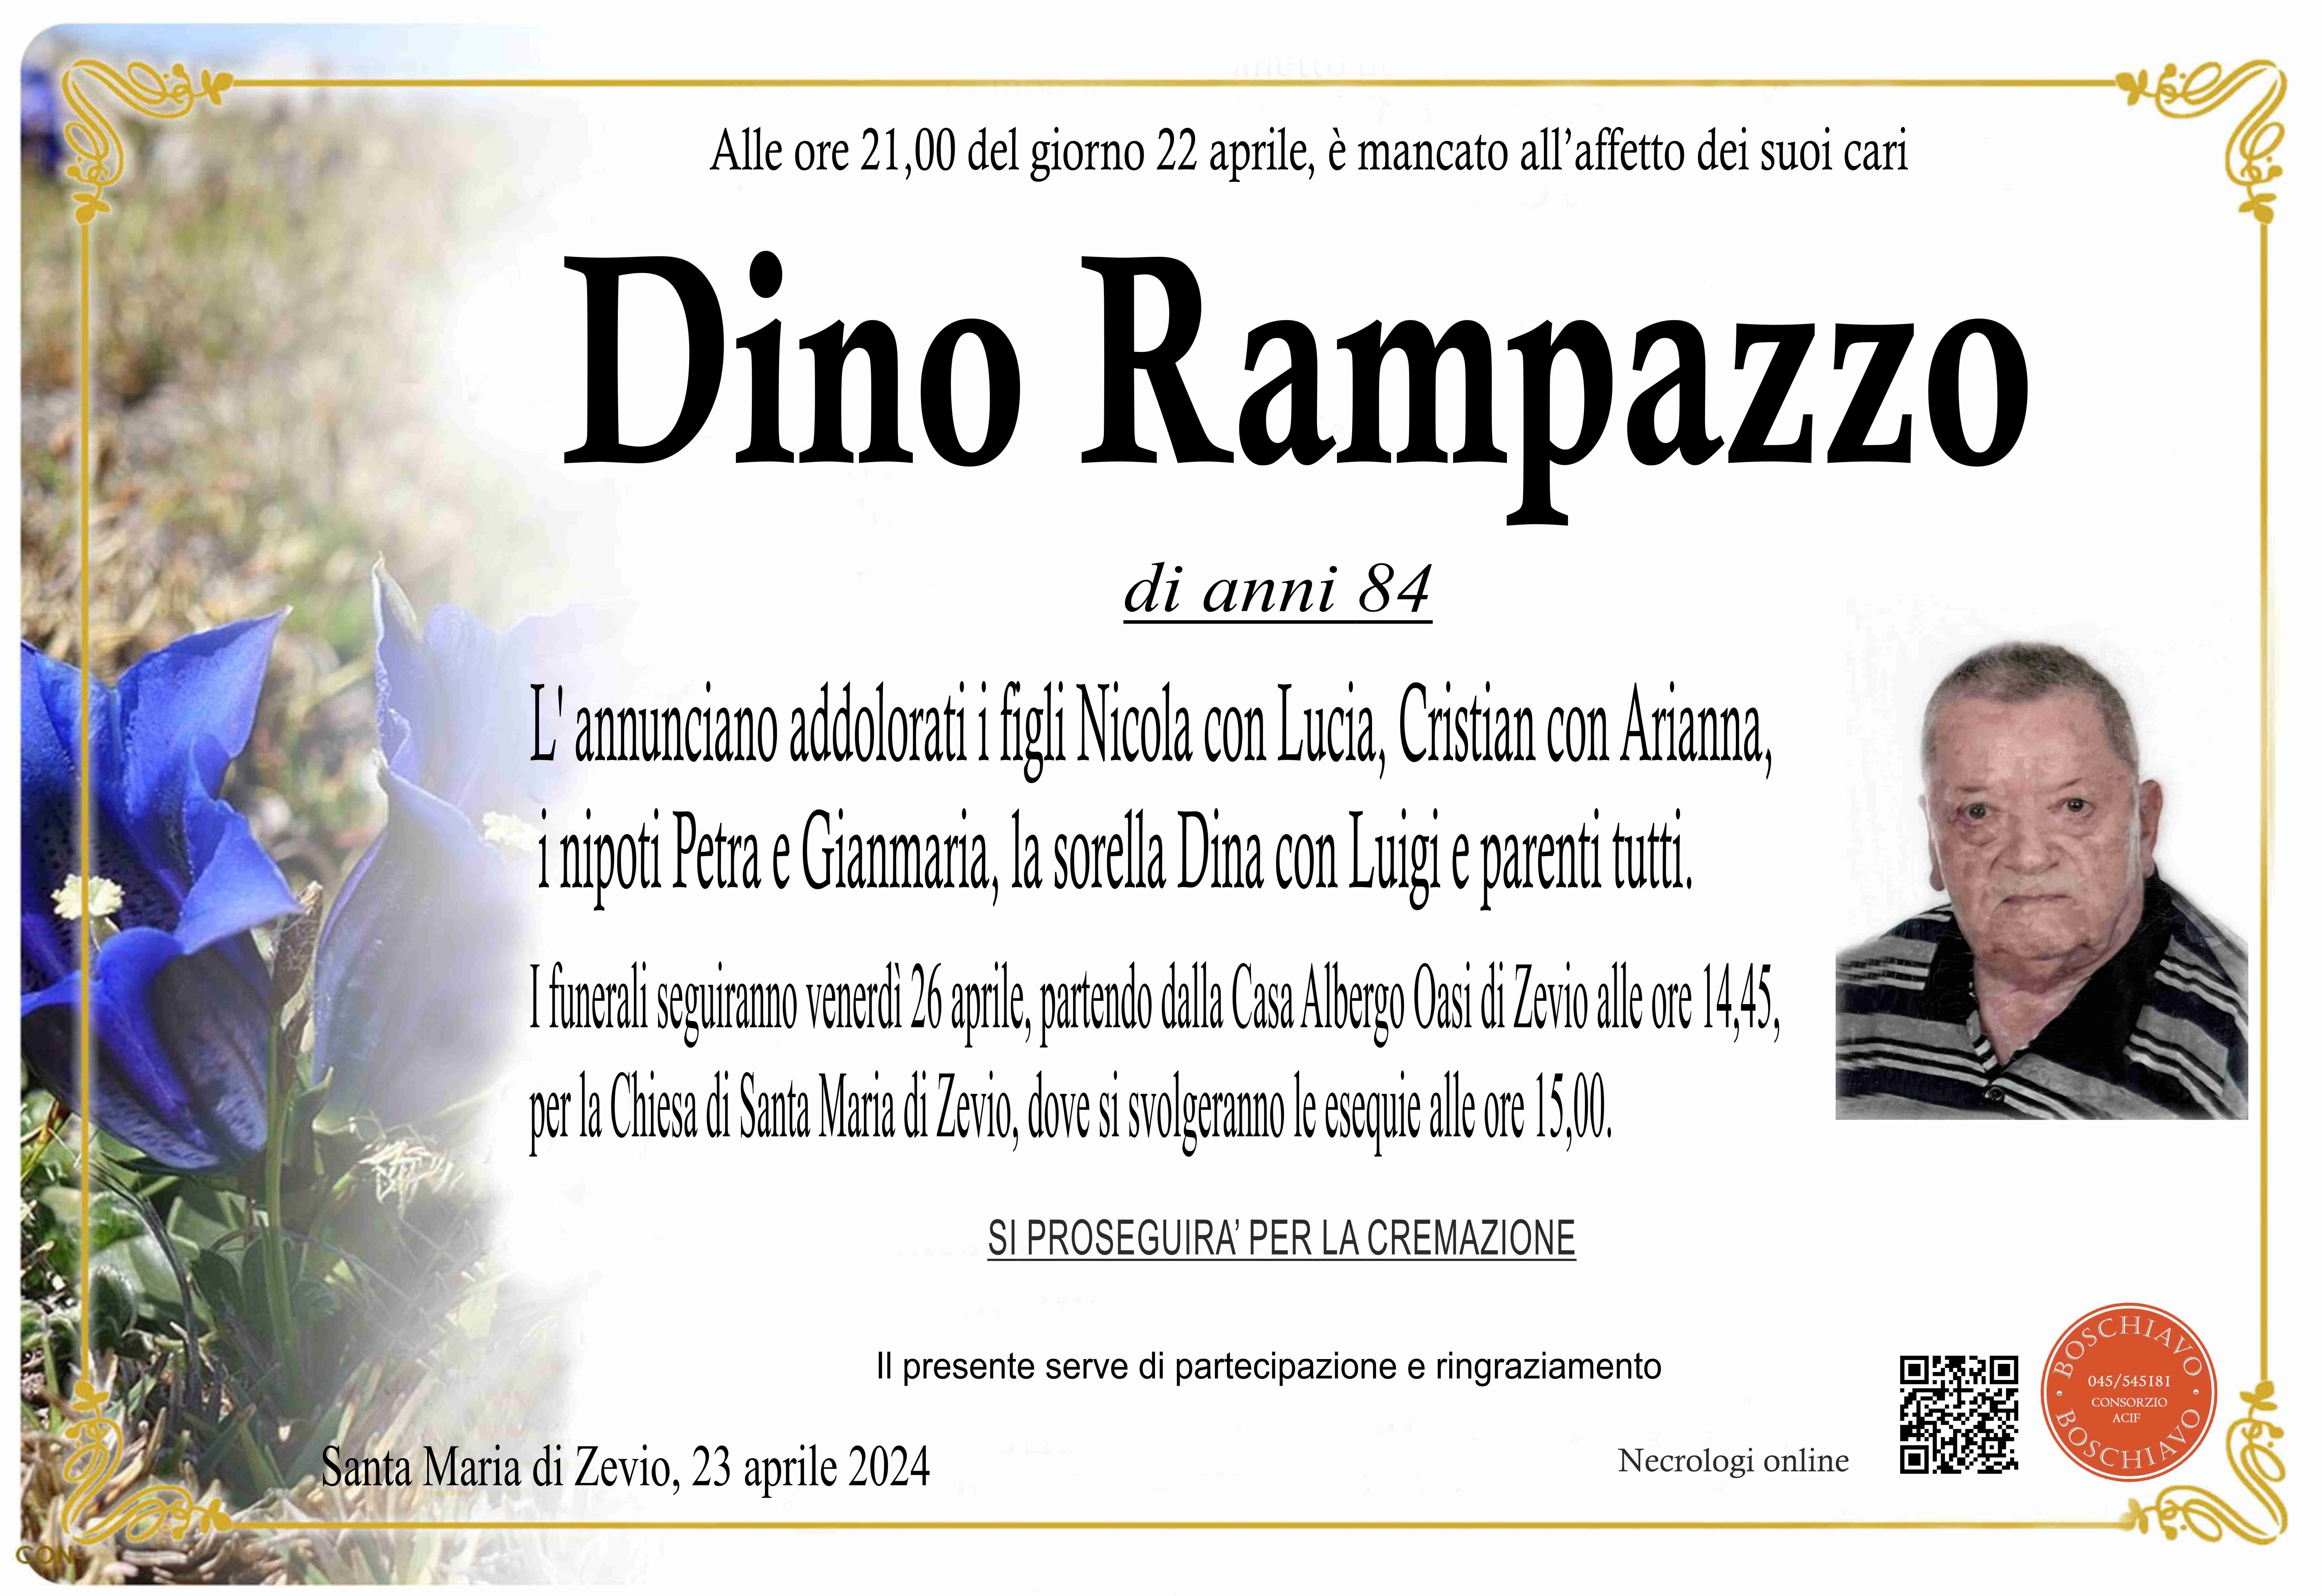 Rampazzo Dino